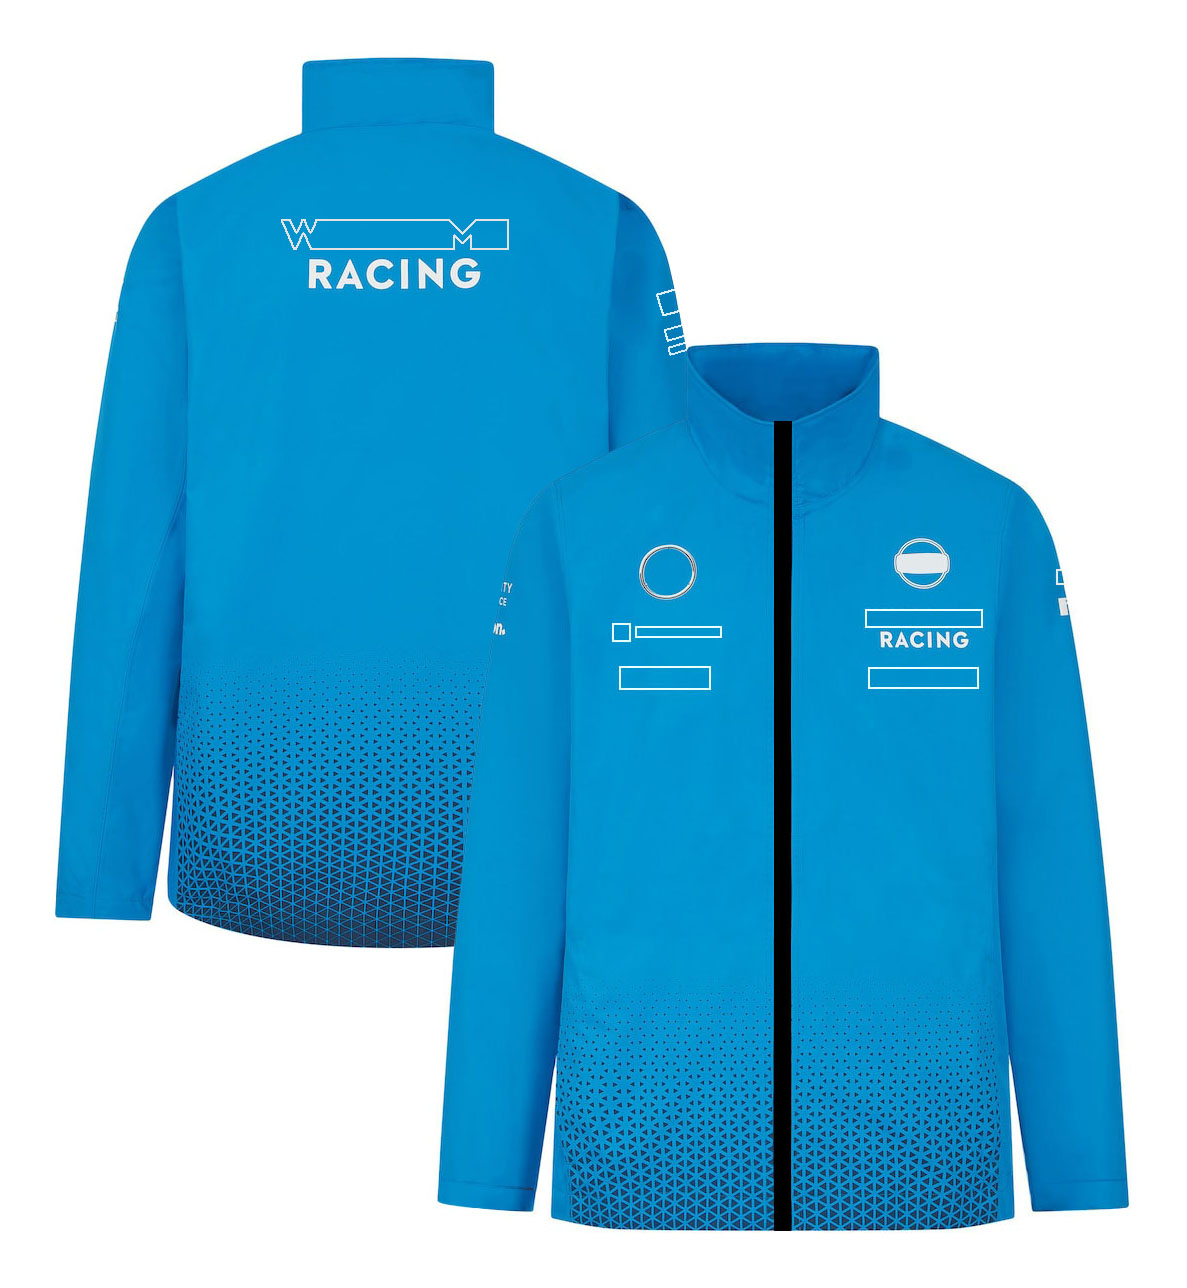 F1 Formel One Racing Dress 2024, samma stil Sports Jacket Soft Shell Jacket för förare under den nya säsongen.